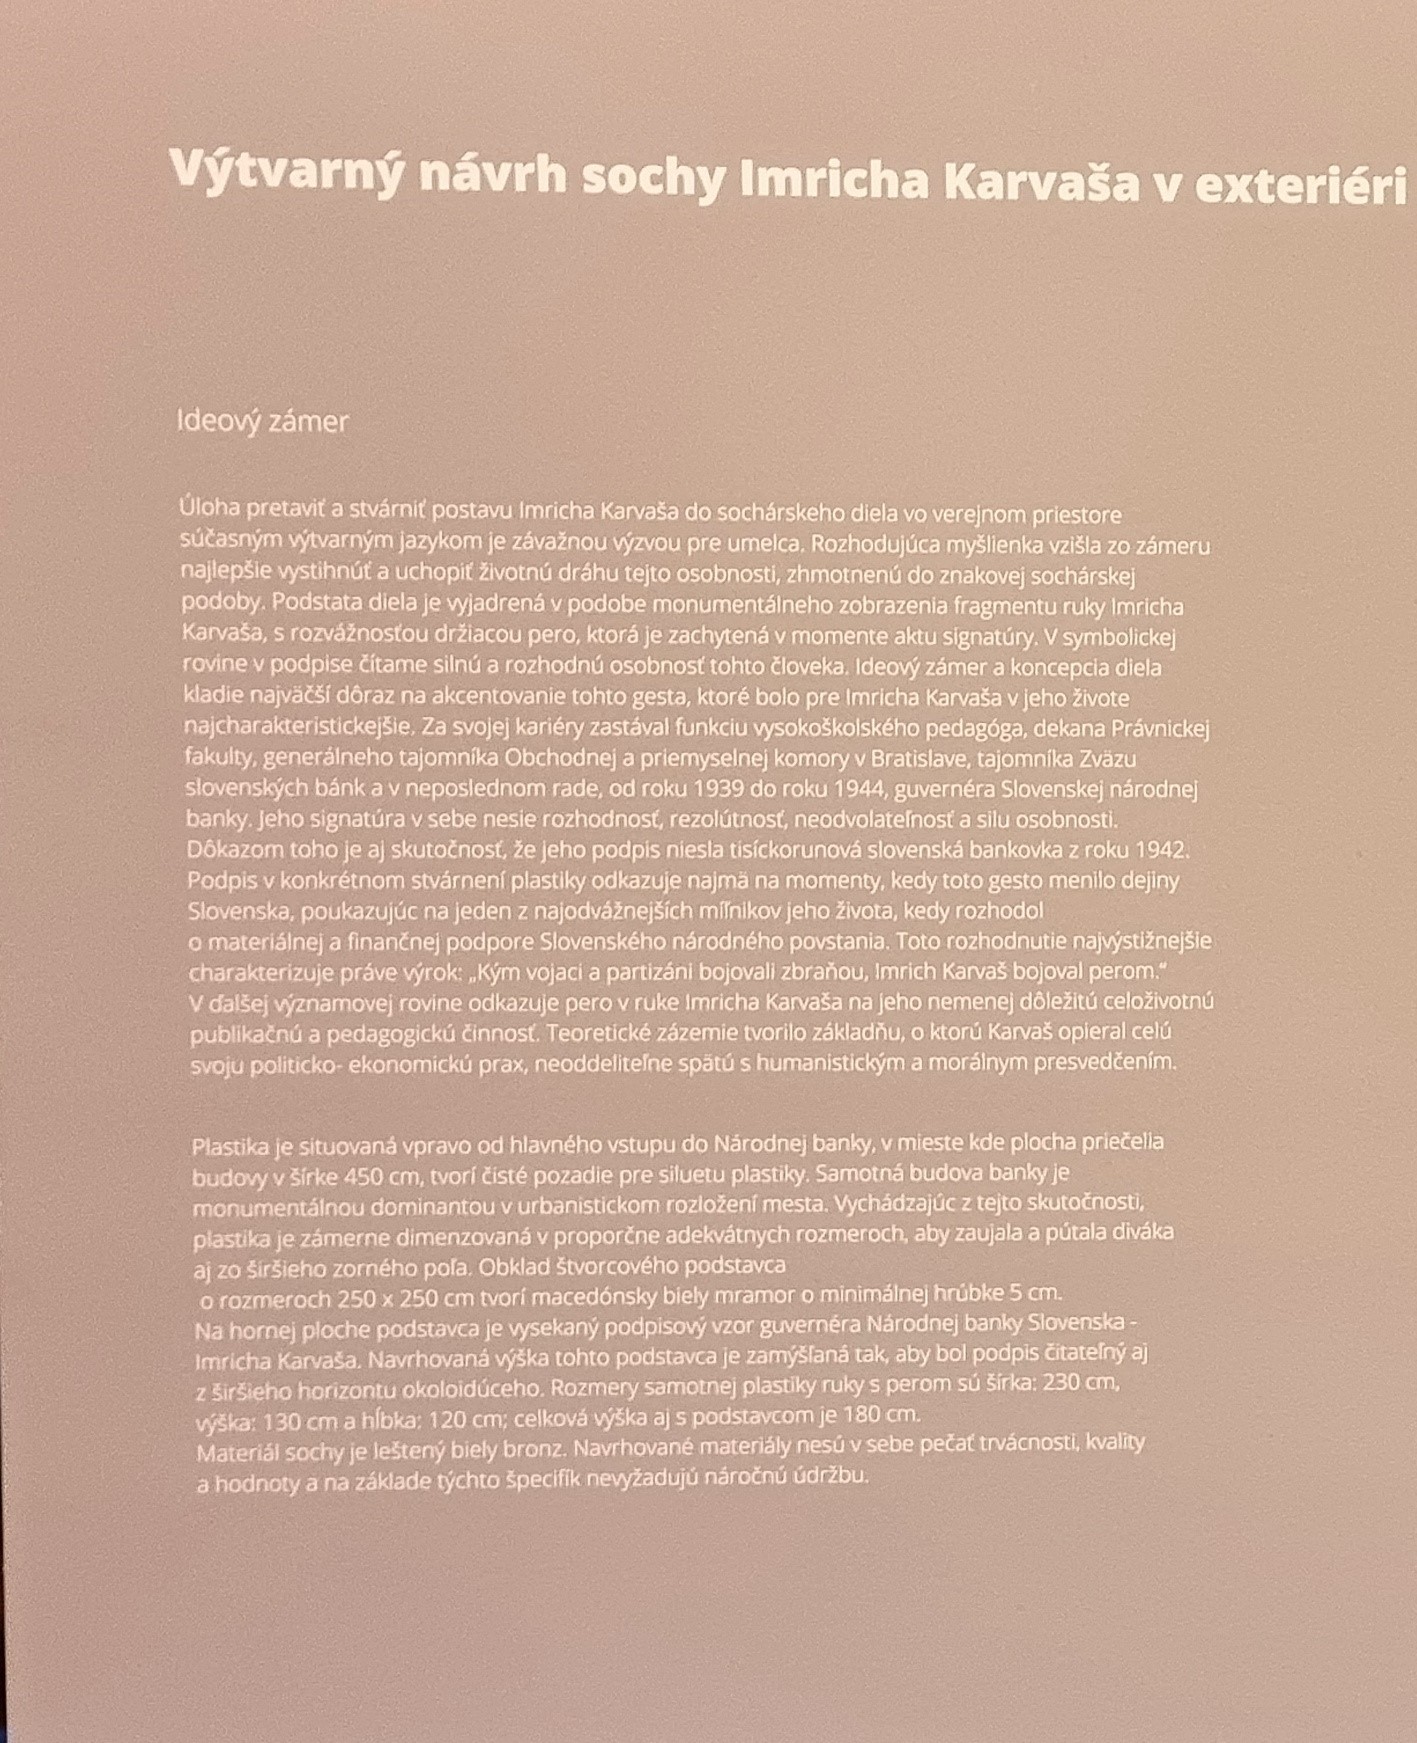 O národnej banke, Výtvarný návrh sochy Imricha Karvaša v exteriéri budovy NBS